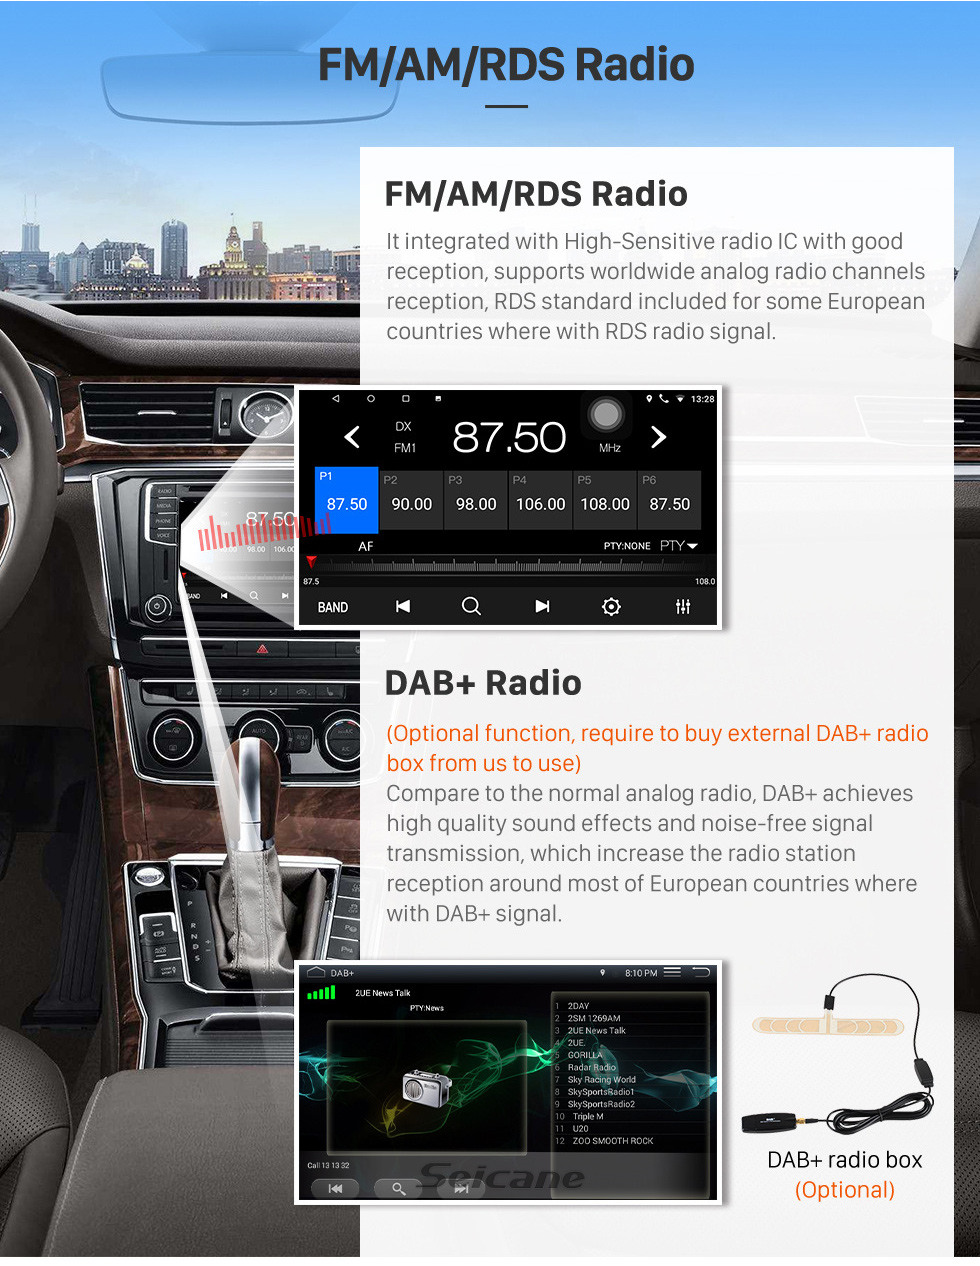 Seicane 9 polegada Android 10.0 2013 2014 2015 2016 2017 Ford Edge Rádio Sistema de Navegação GPS com Tela de Toque HD Bluetooth 3G WIFI apoio Câmera de Backup TPMS Controle de Volante Espelho link OBD2 DVR